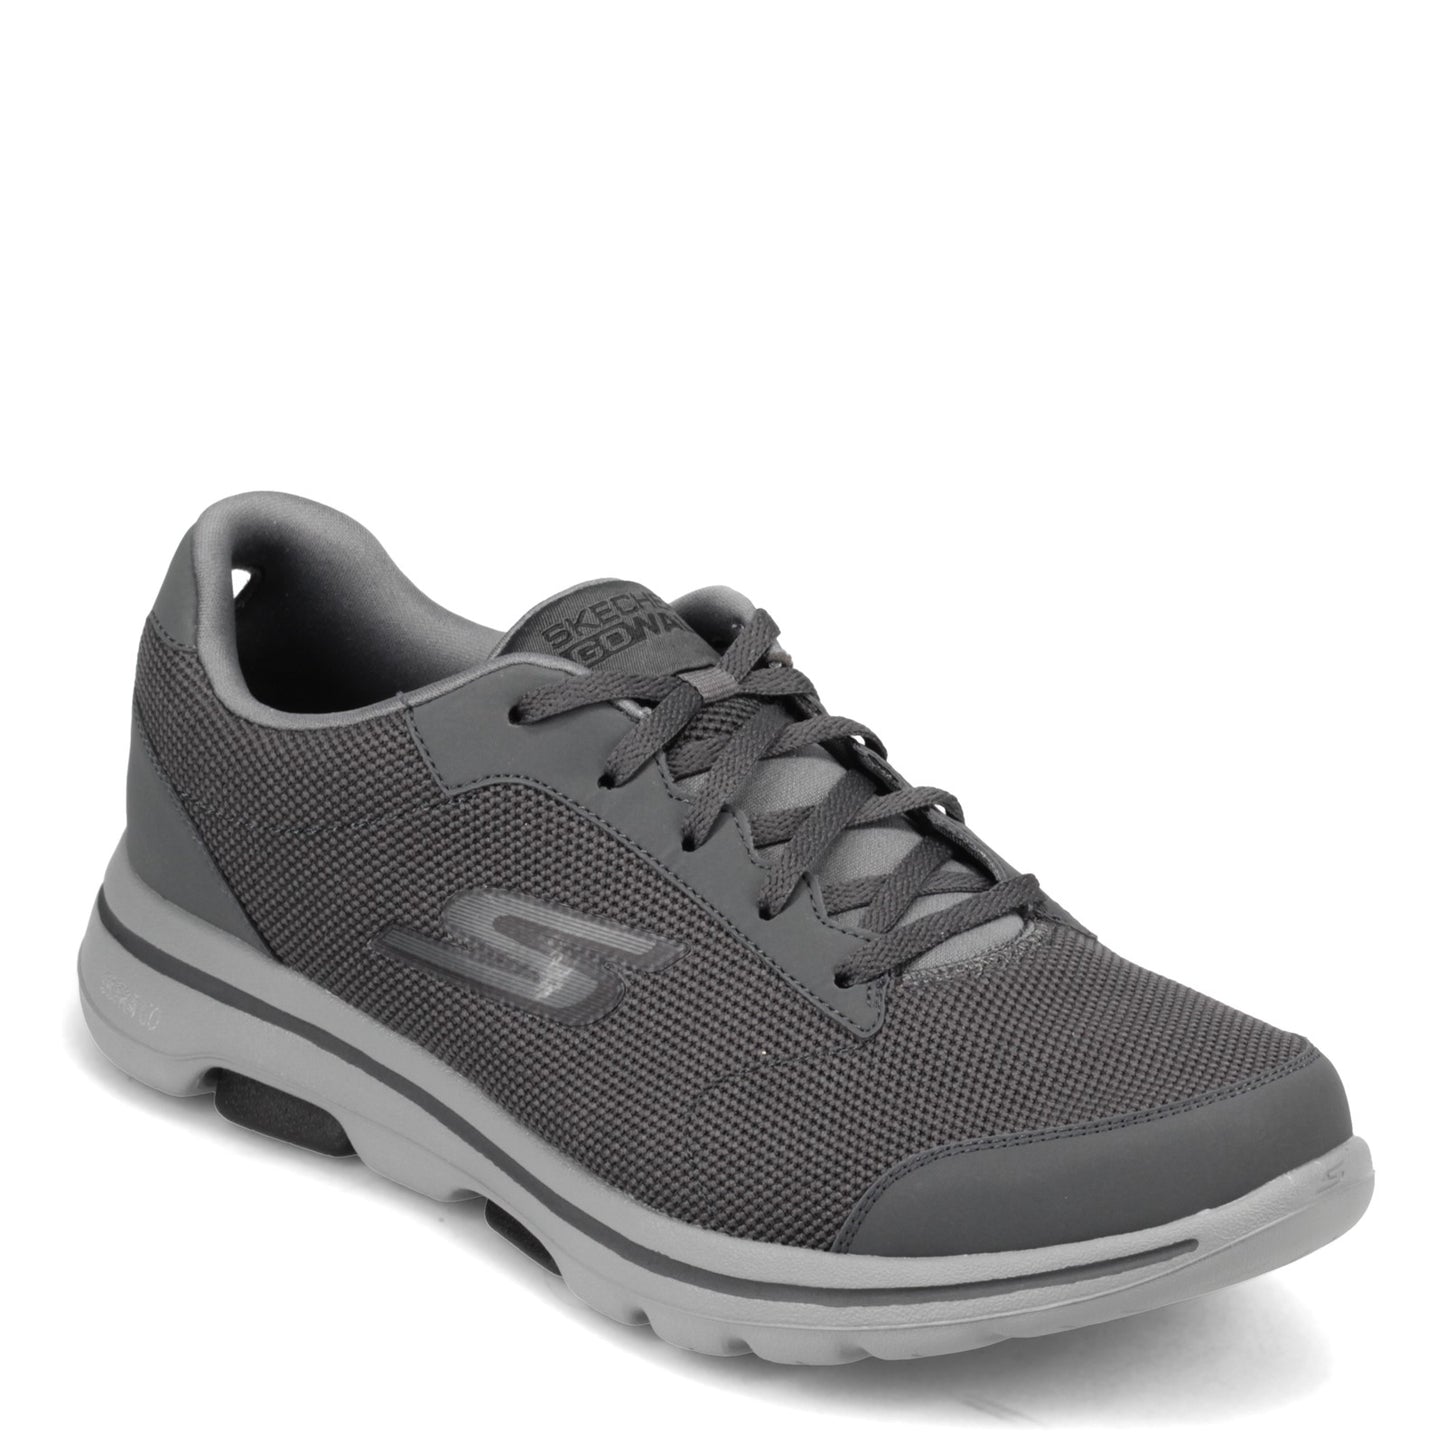 Peltz Shoes  Men's Skechers Go Walk 5 - Demitasse Sneaker - Wide Width CHARCOAL 55519EWW-CCBK